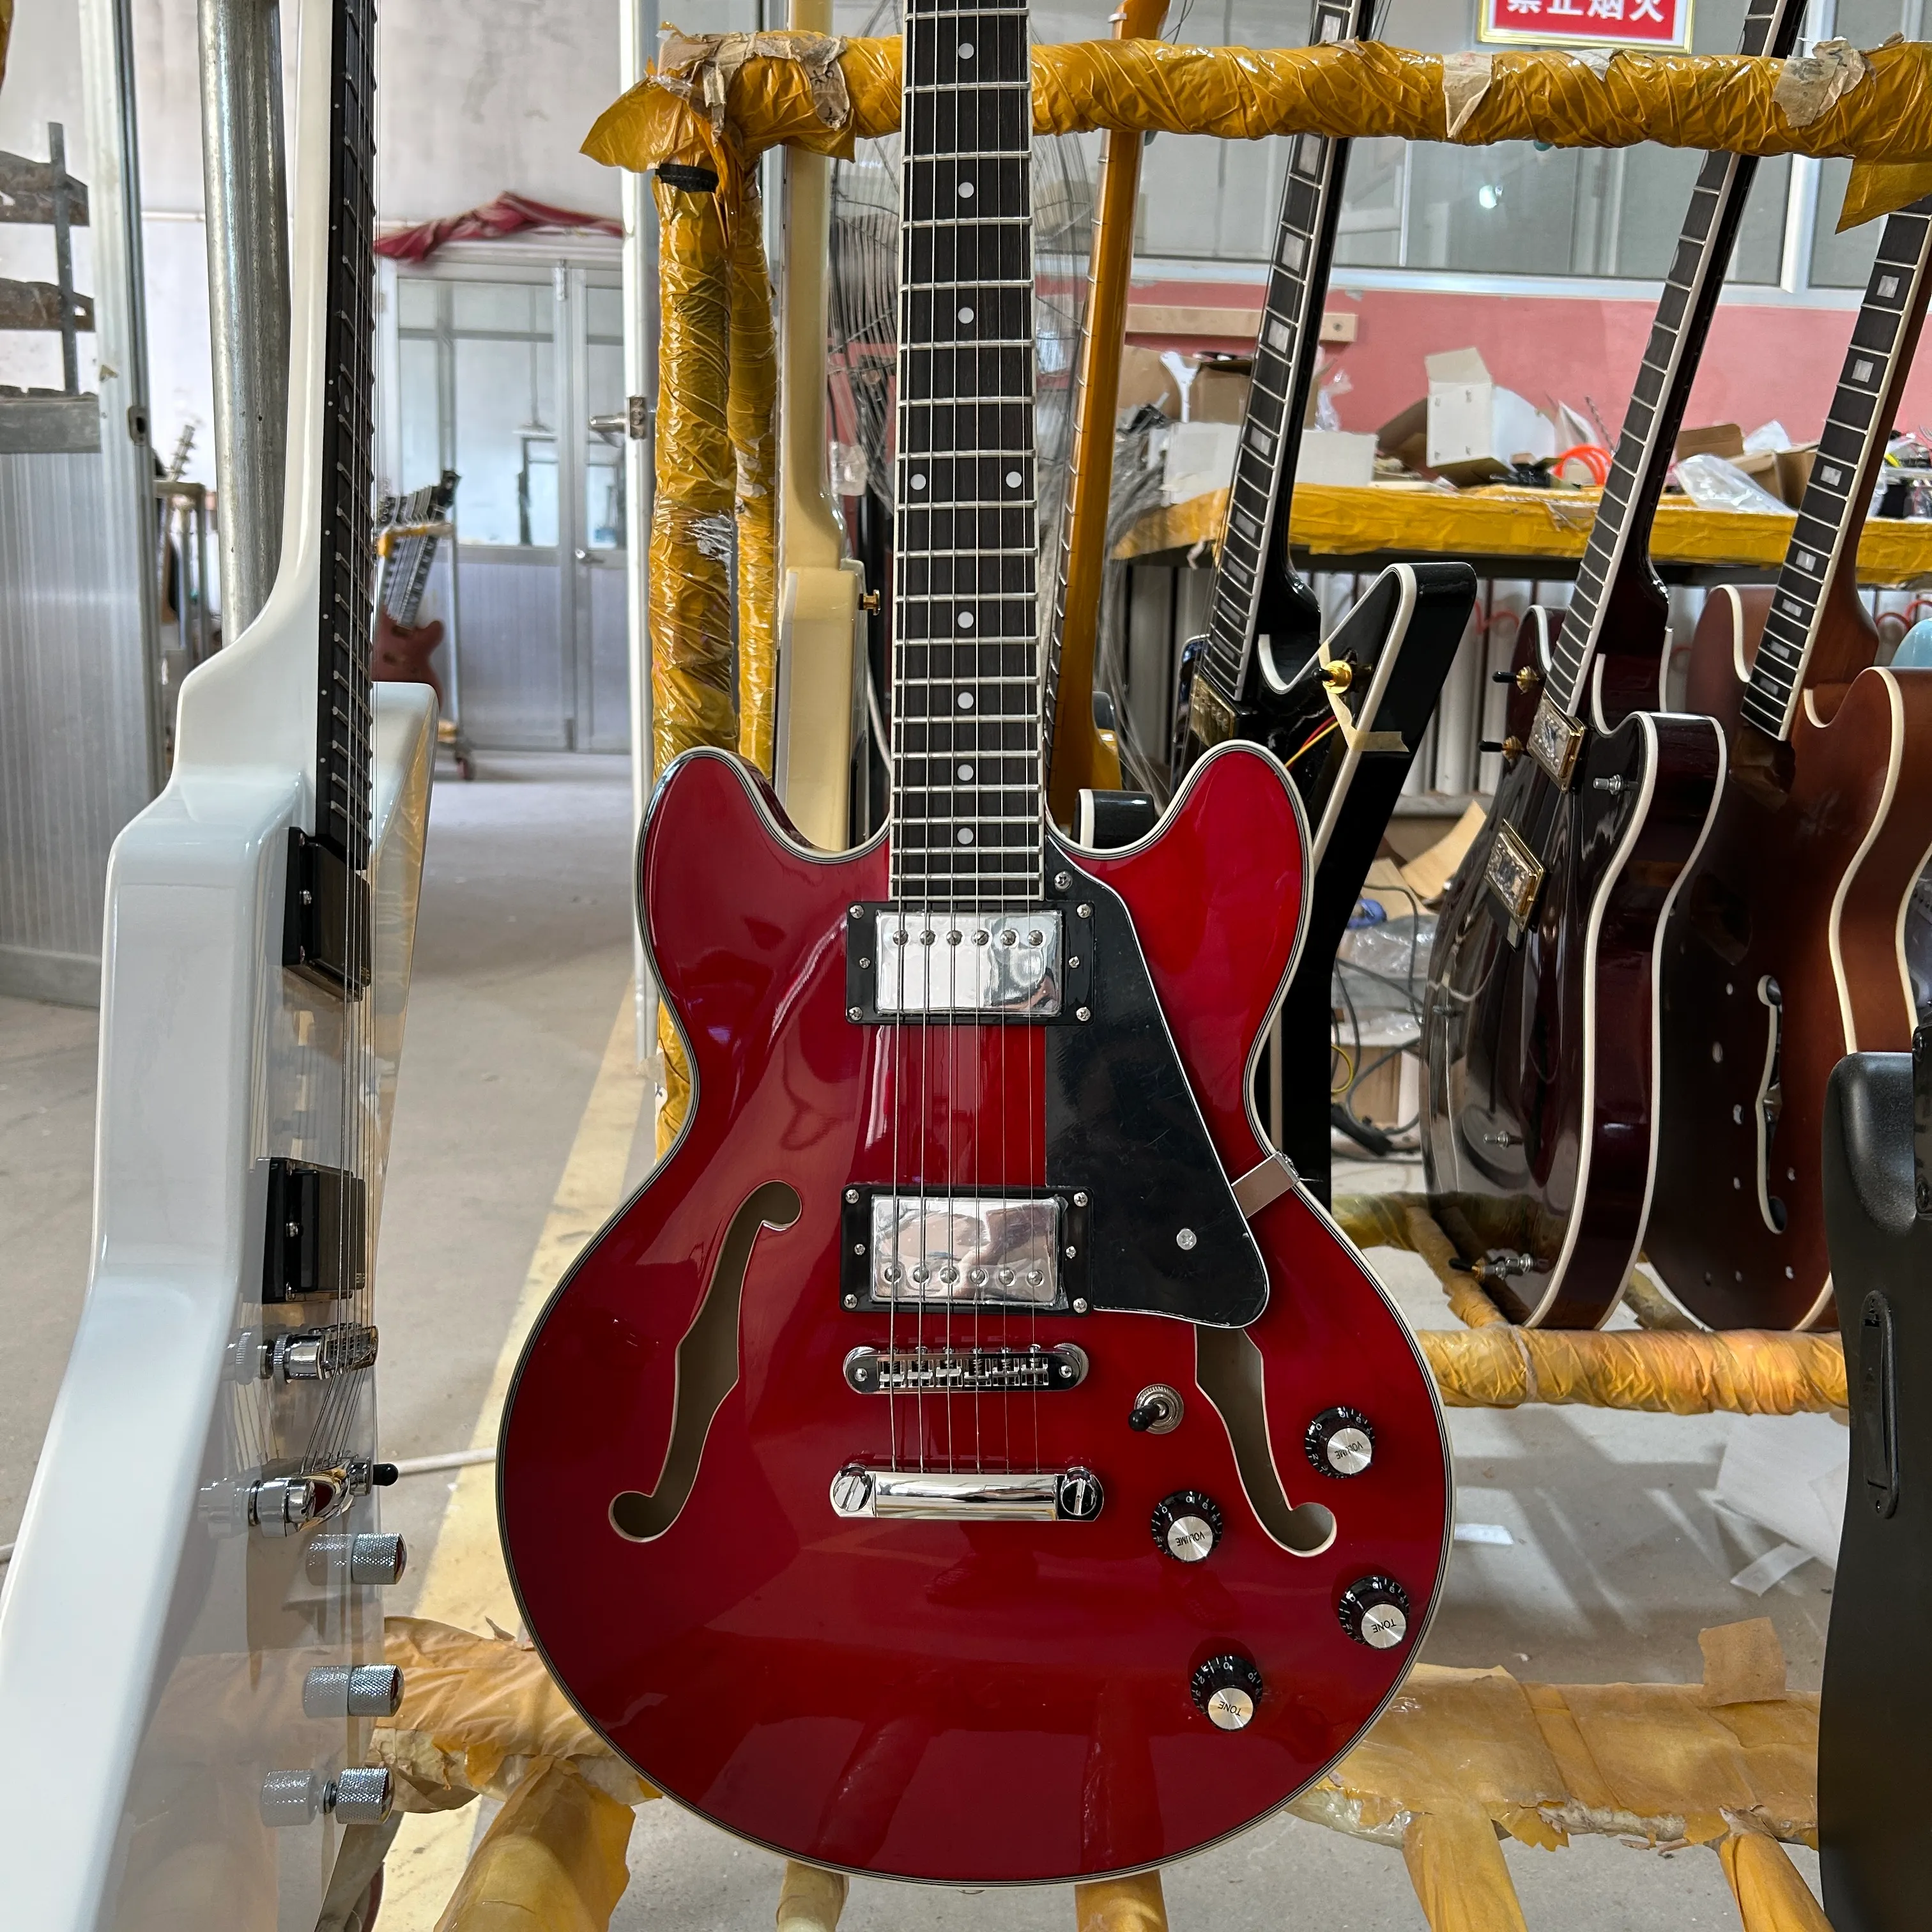 339 일렉트릭 기타, 반 중공 바디, 투명한 붉은 색, 로즈 우드 지판, 실버 액세서리, 무료 선박